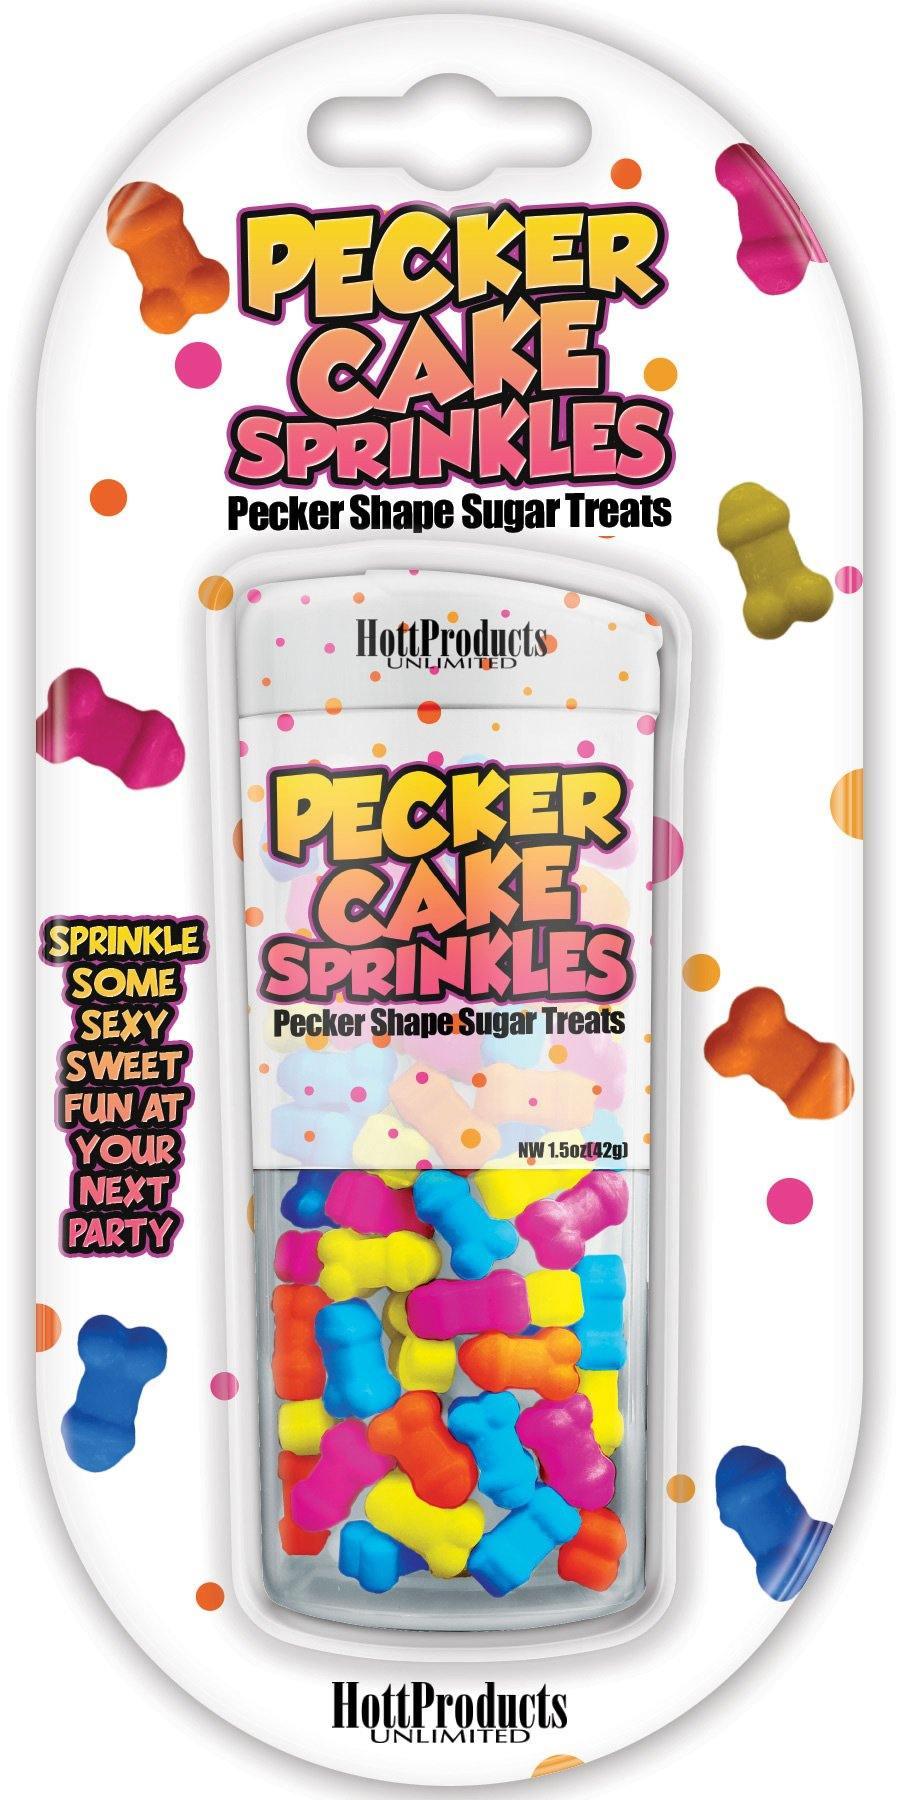 Pecker Cake Sprinkles - My Sex Toy Hub